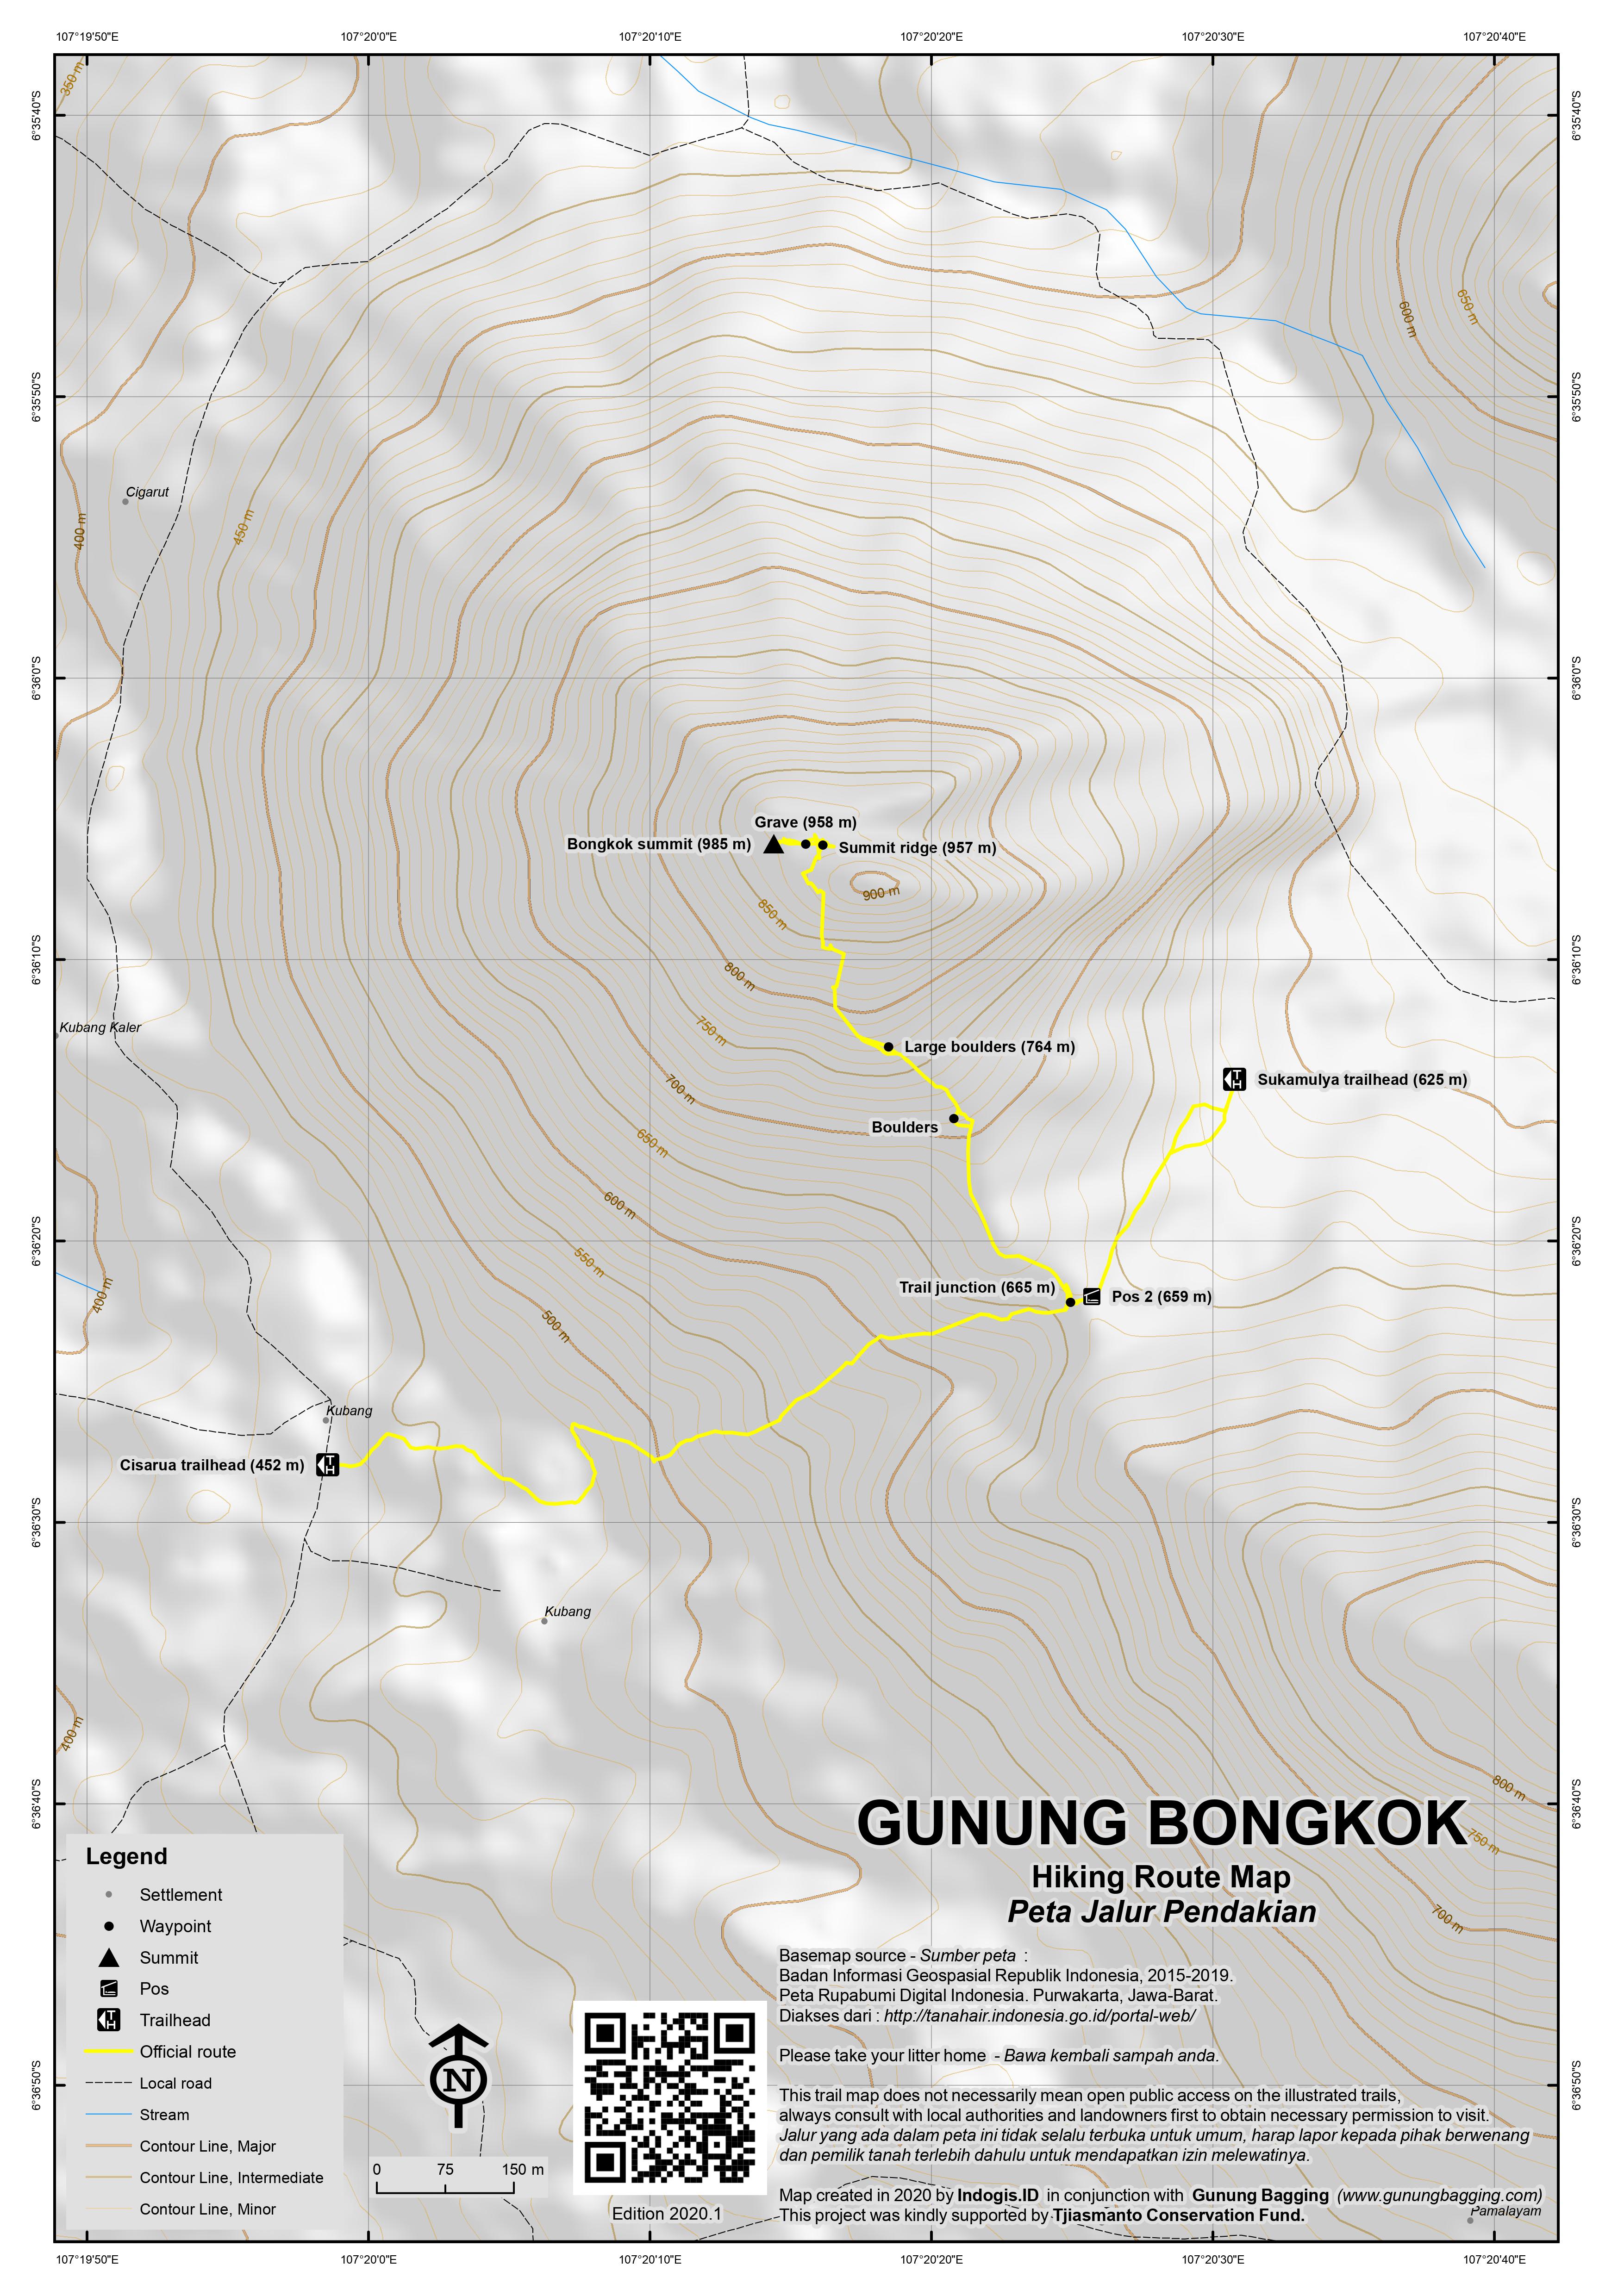 Peta Jalur Pendakian Gunung Bongkok